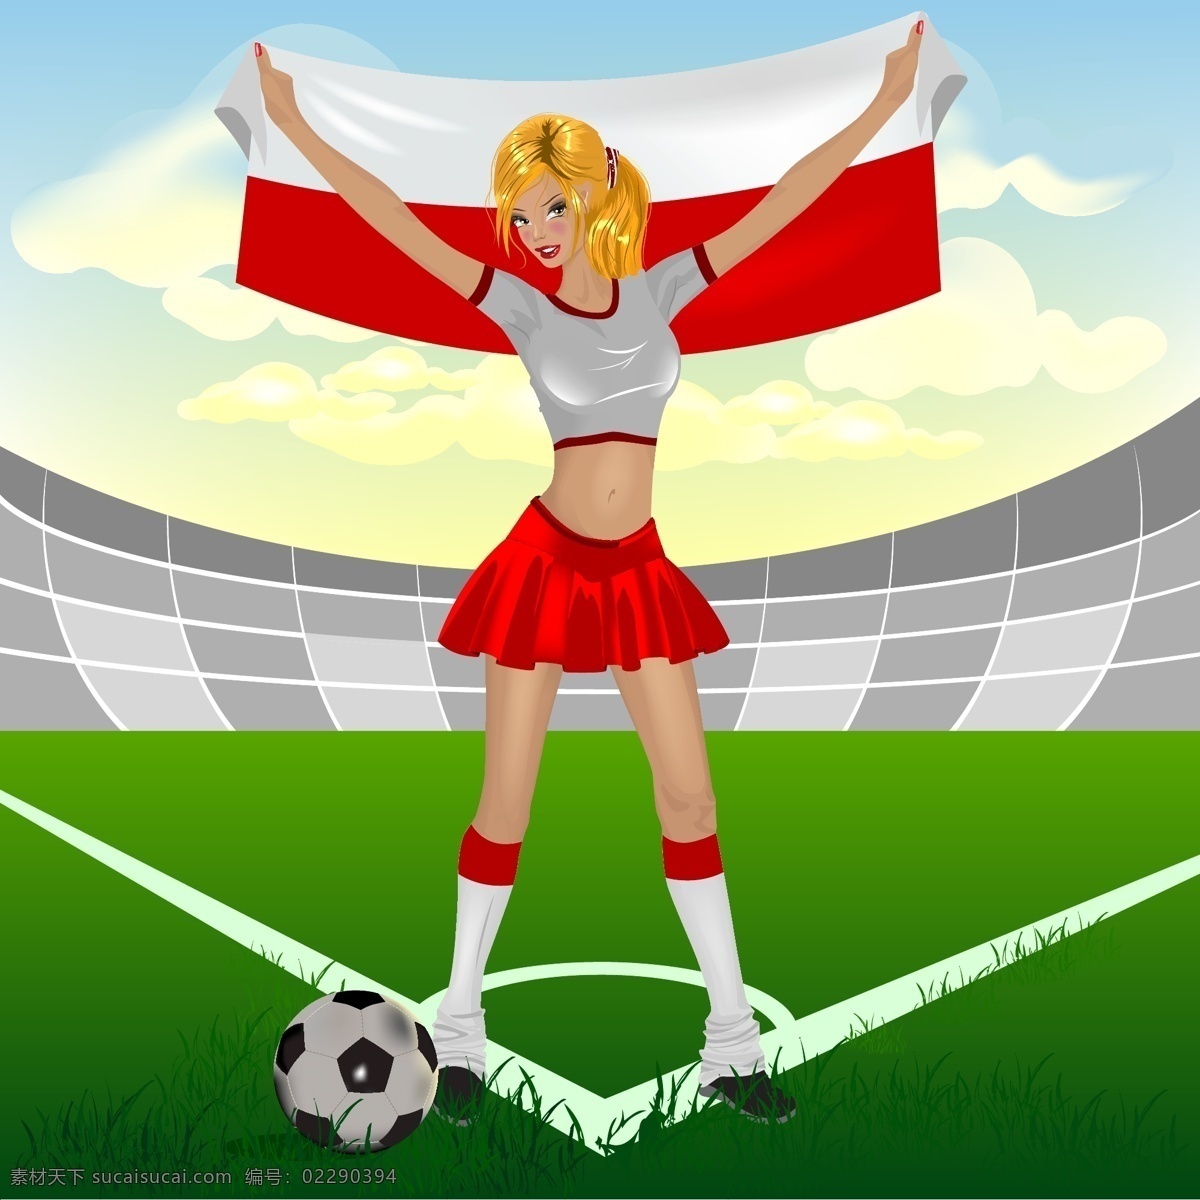 宝贝 美女 女孩 体育运动 文化艺术 足球 足球场 足球宝贝 矢量 模板下载 矢量图 日常生活